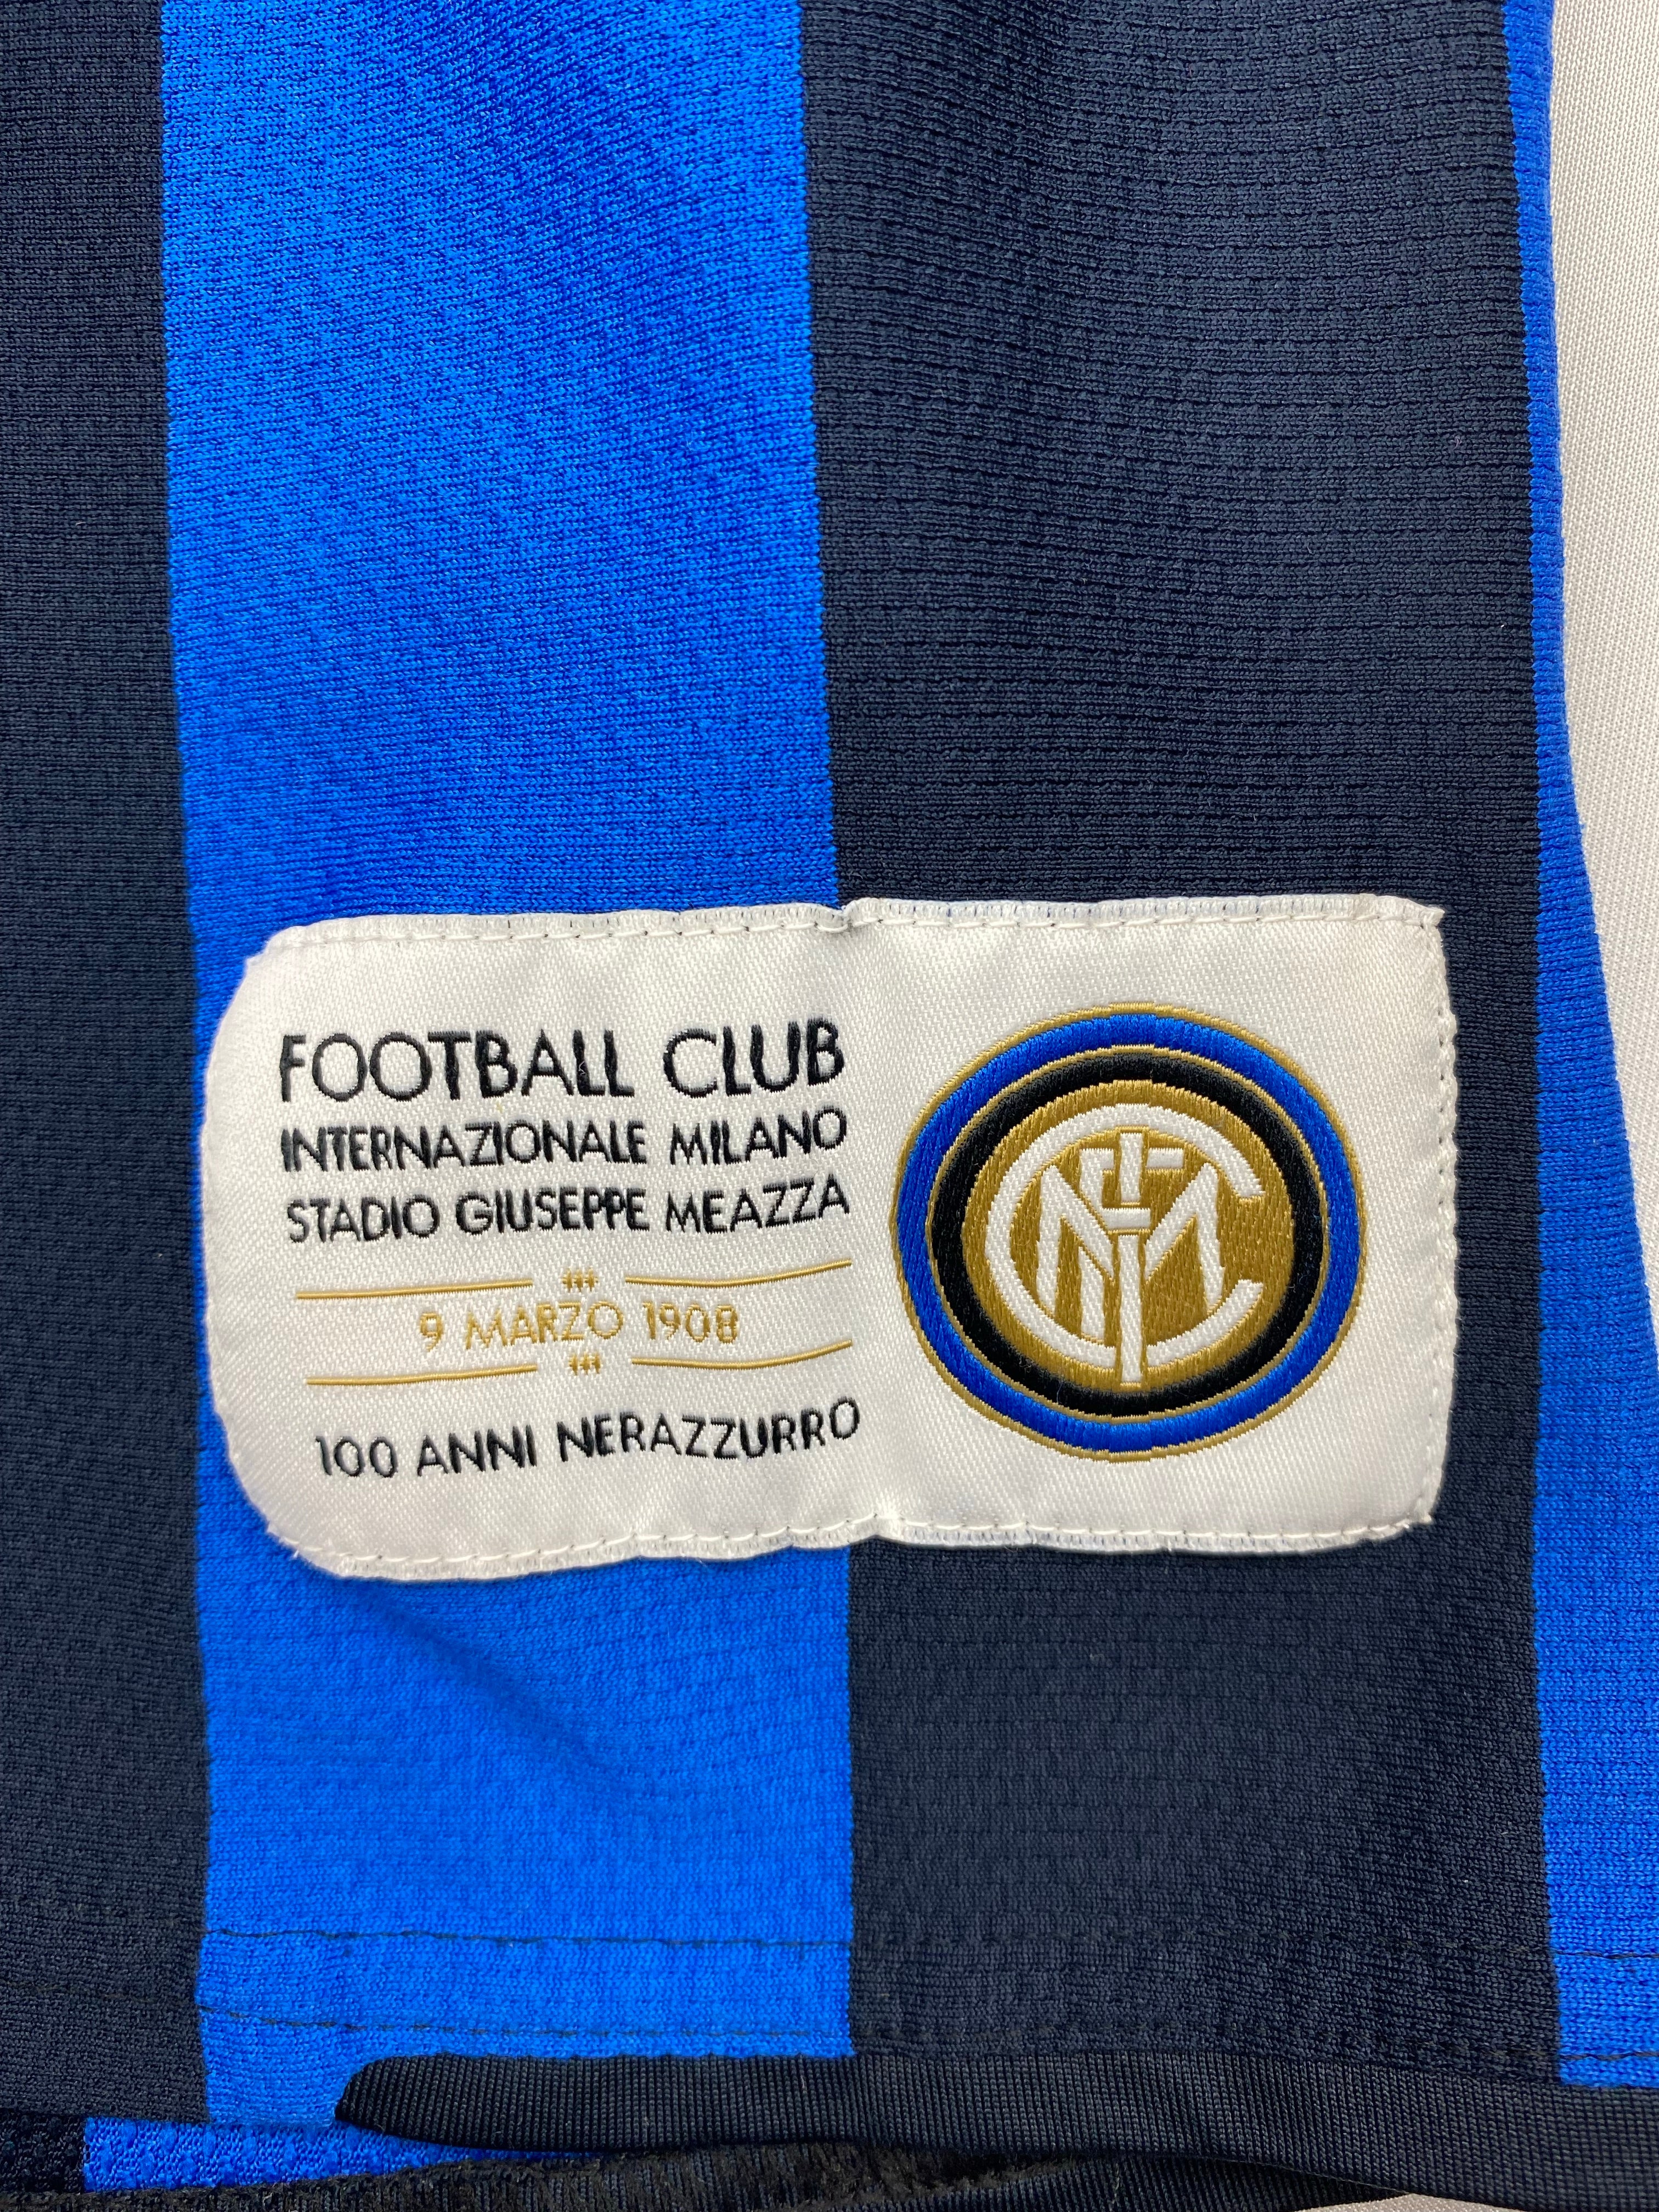 Maillot du centenaire de l'Inter Milan domicile 2007/08 (XL.Garçons) 8,5/10